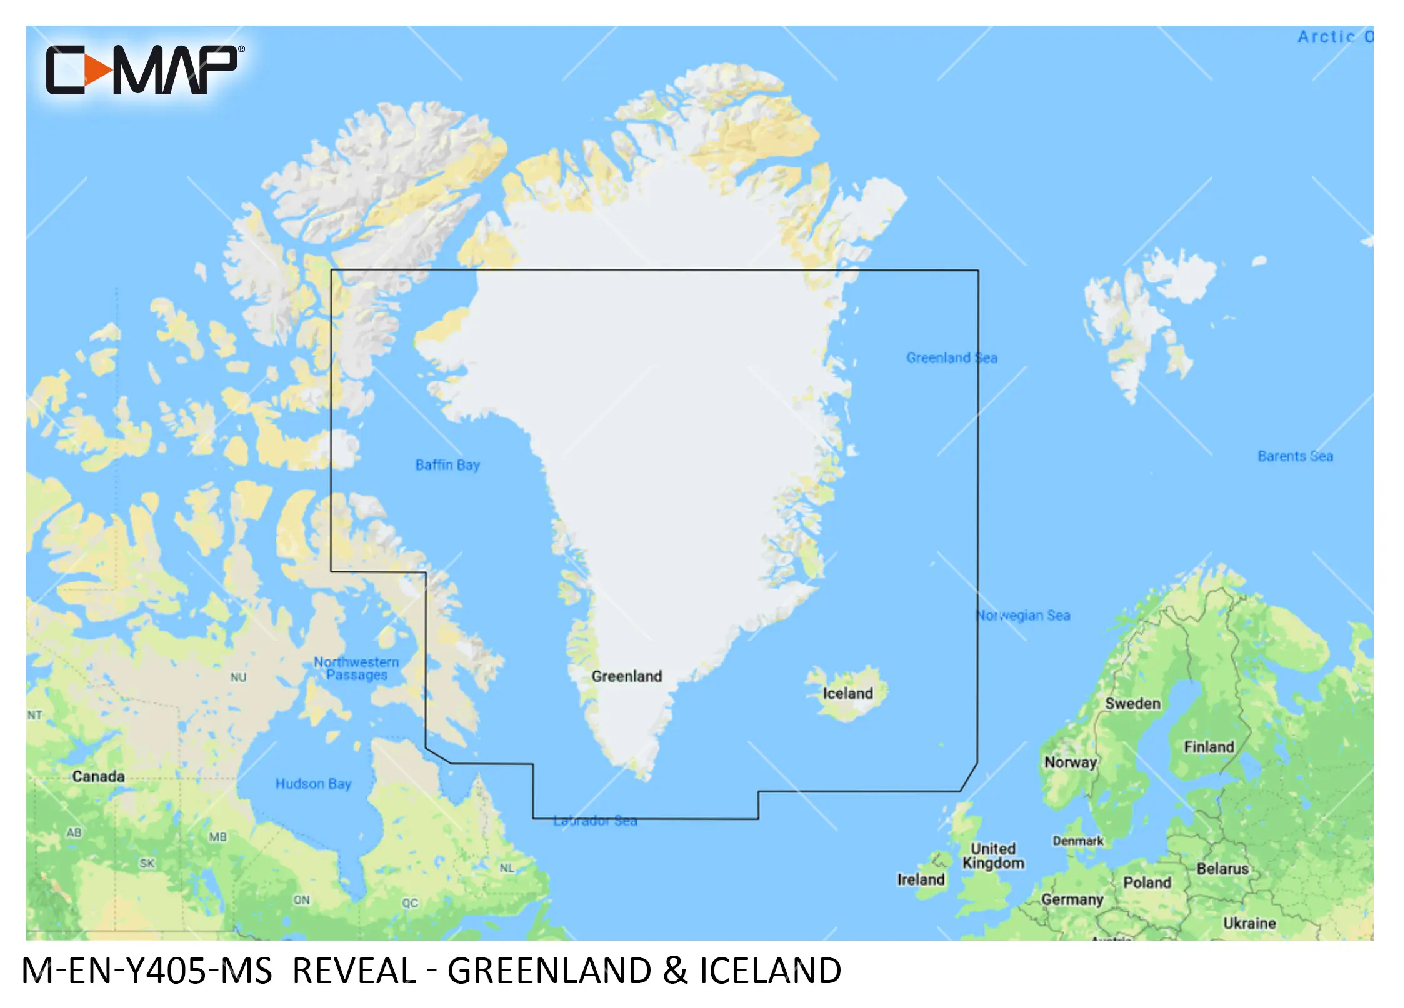 C-MAP Reveal Groenland et Islande M-EN-Y405-MS